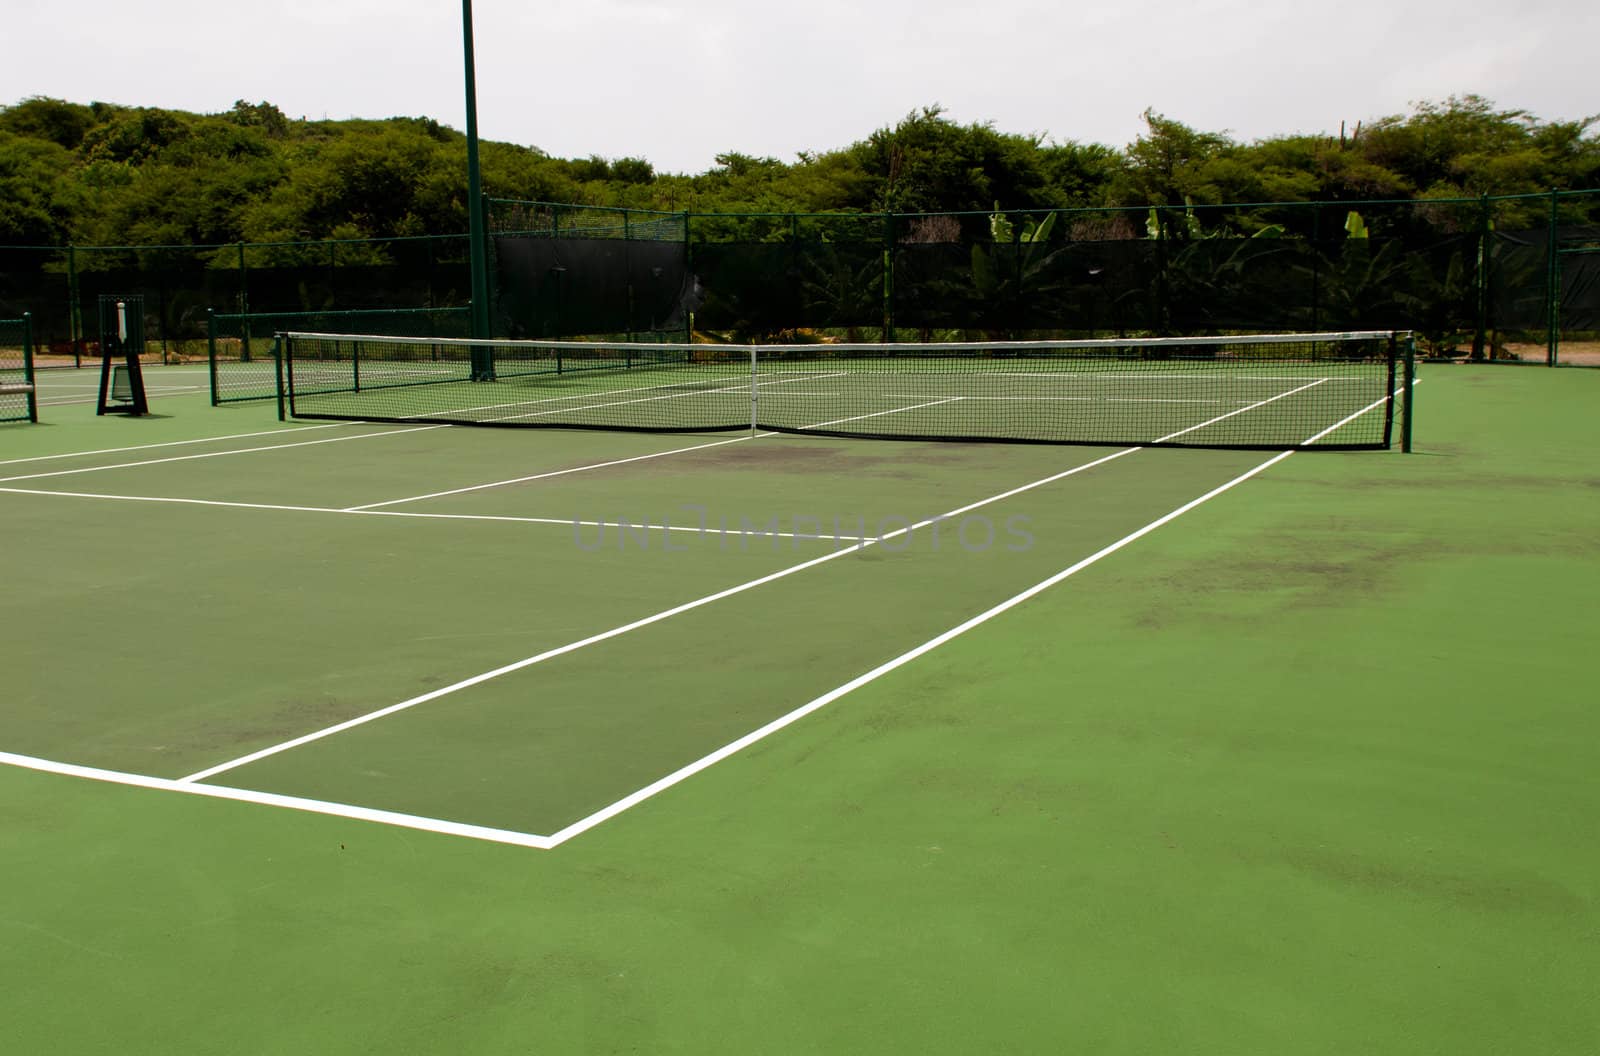 Tennis court by luissantos84